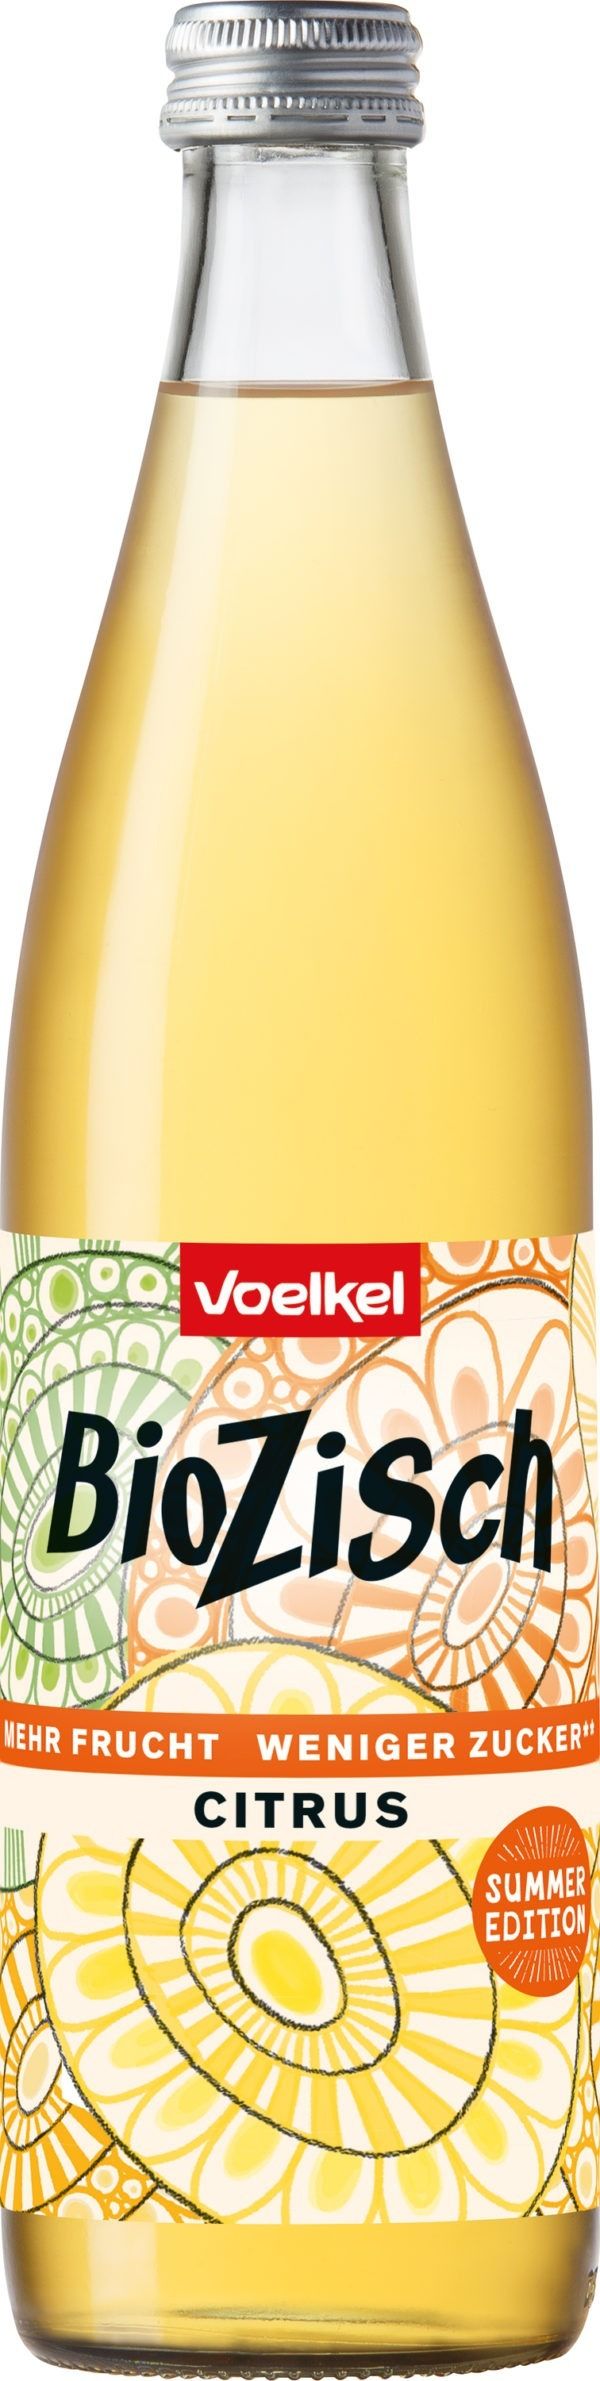 Voelkel BioZisch Summer Edition Citrus 10 x 0,5l